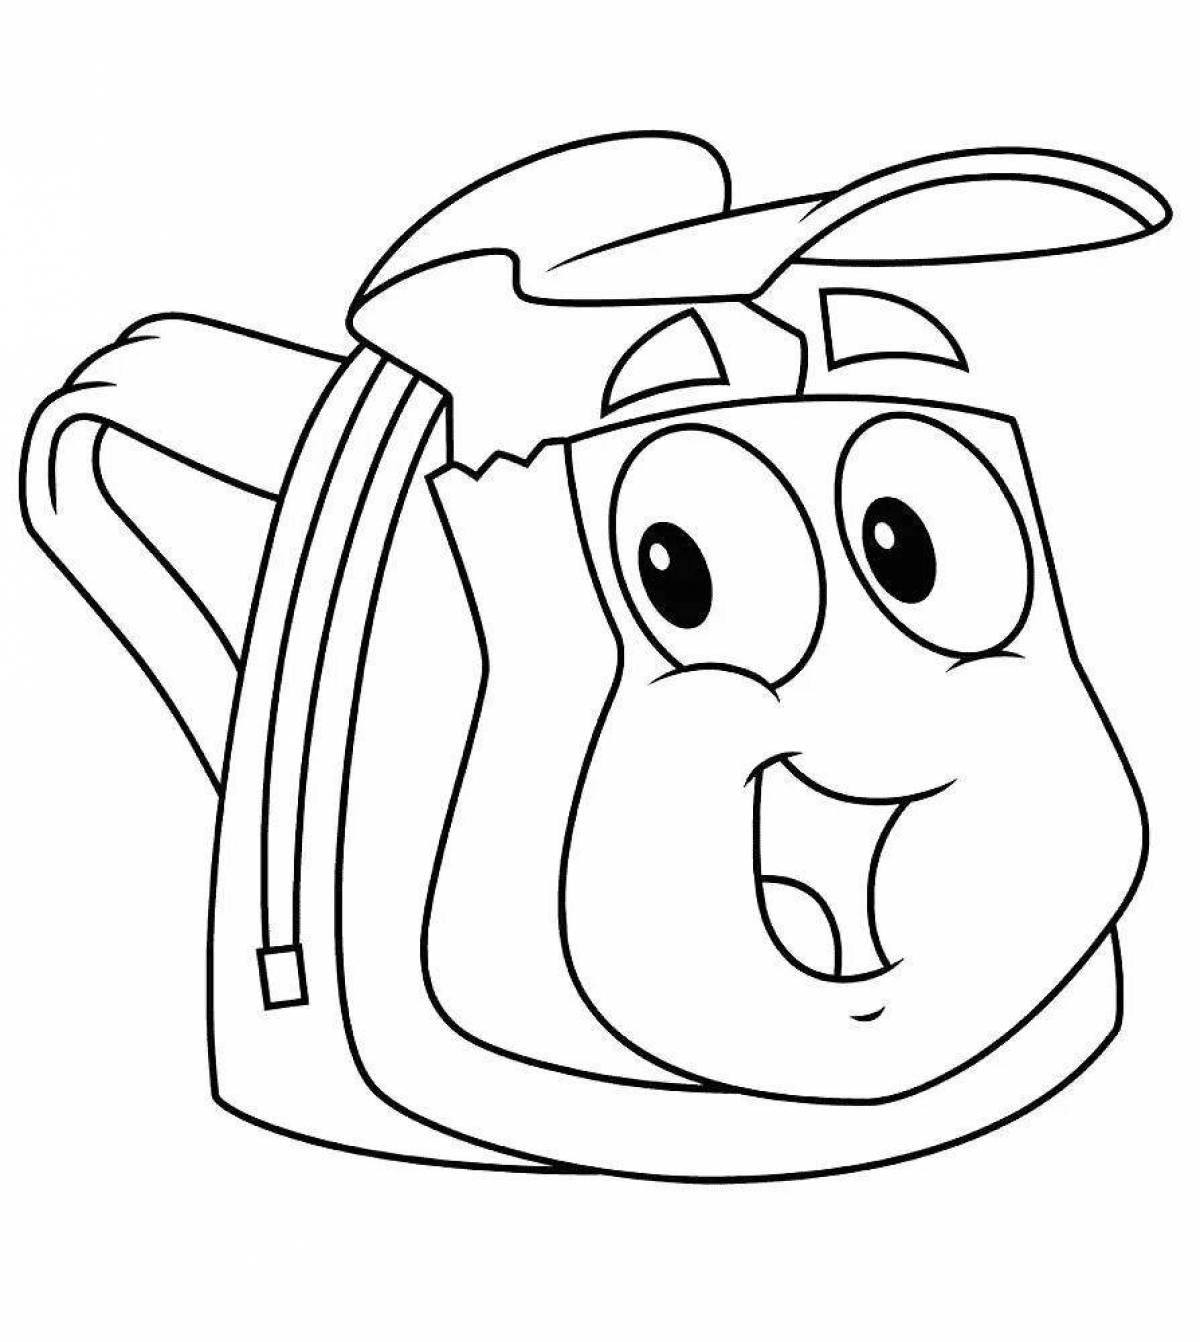 Красочно-игривый рюкзак раскраска для детей